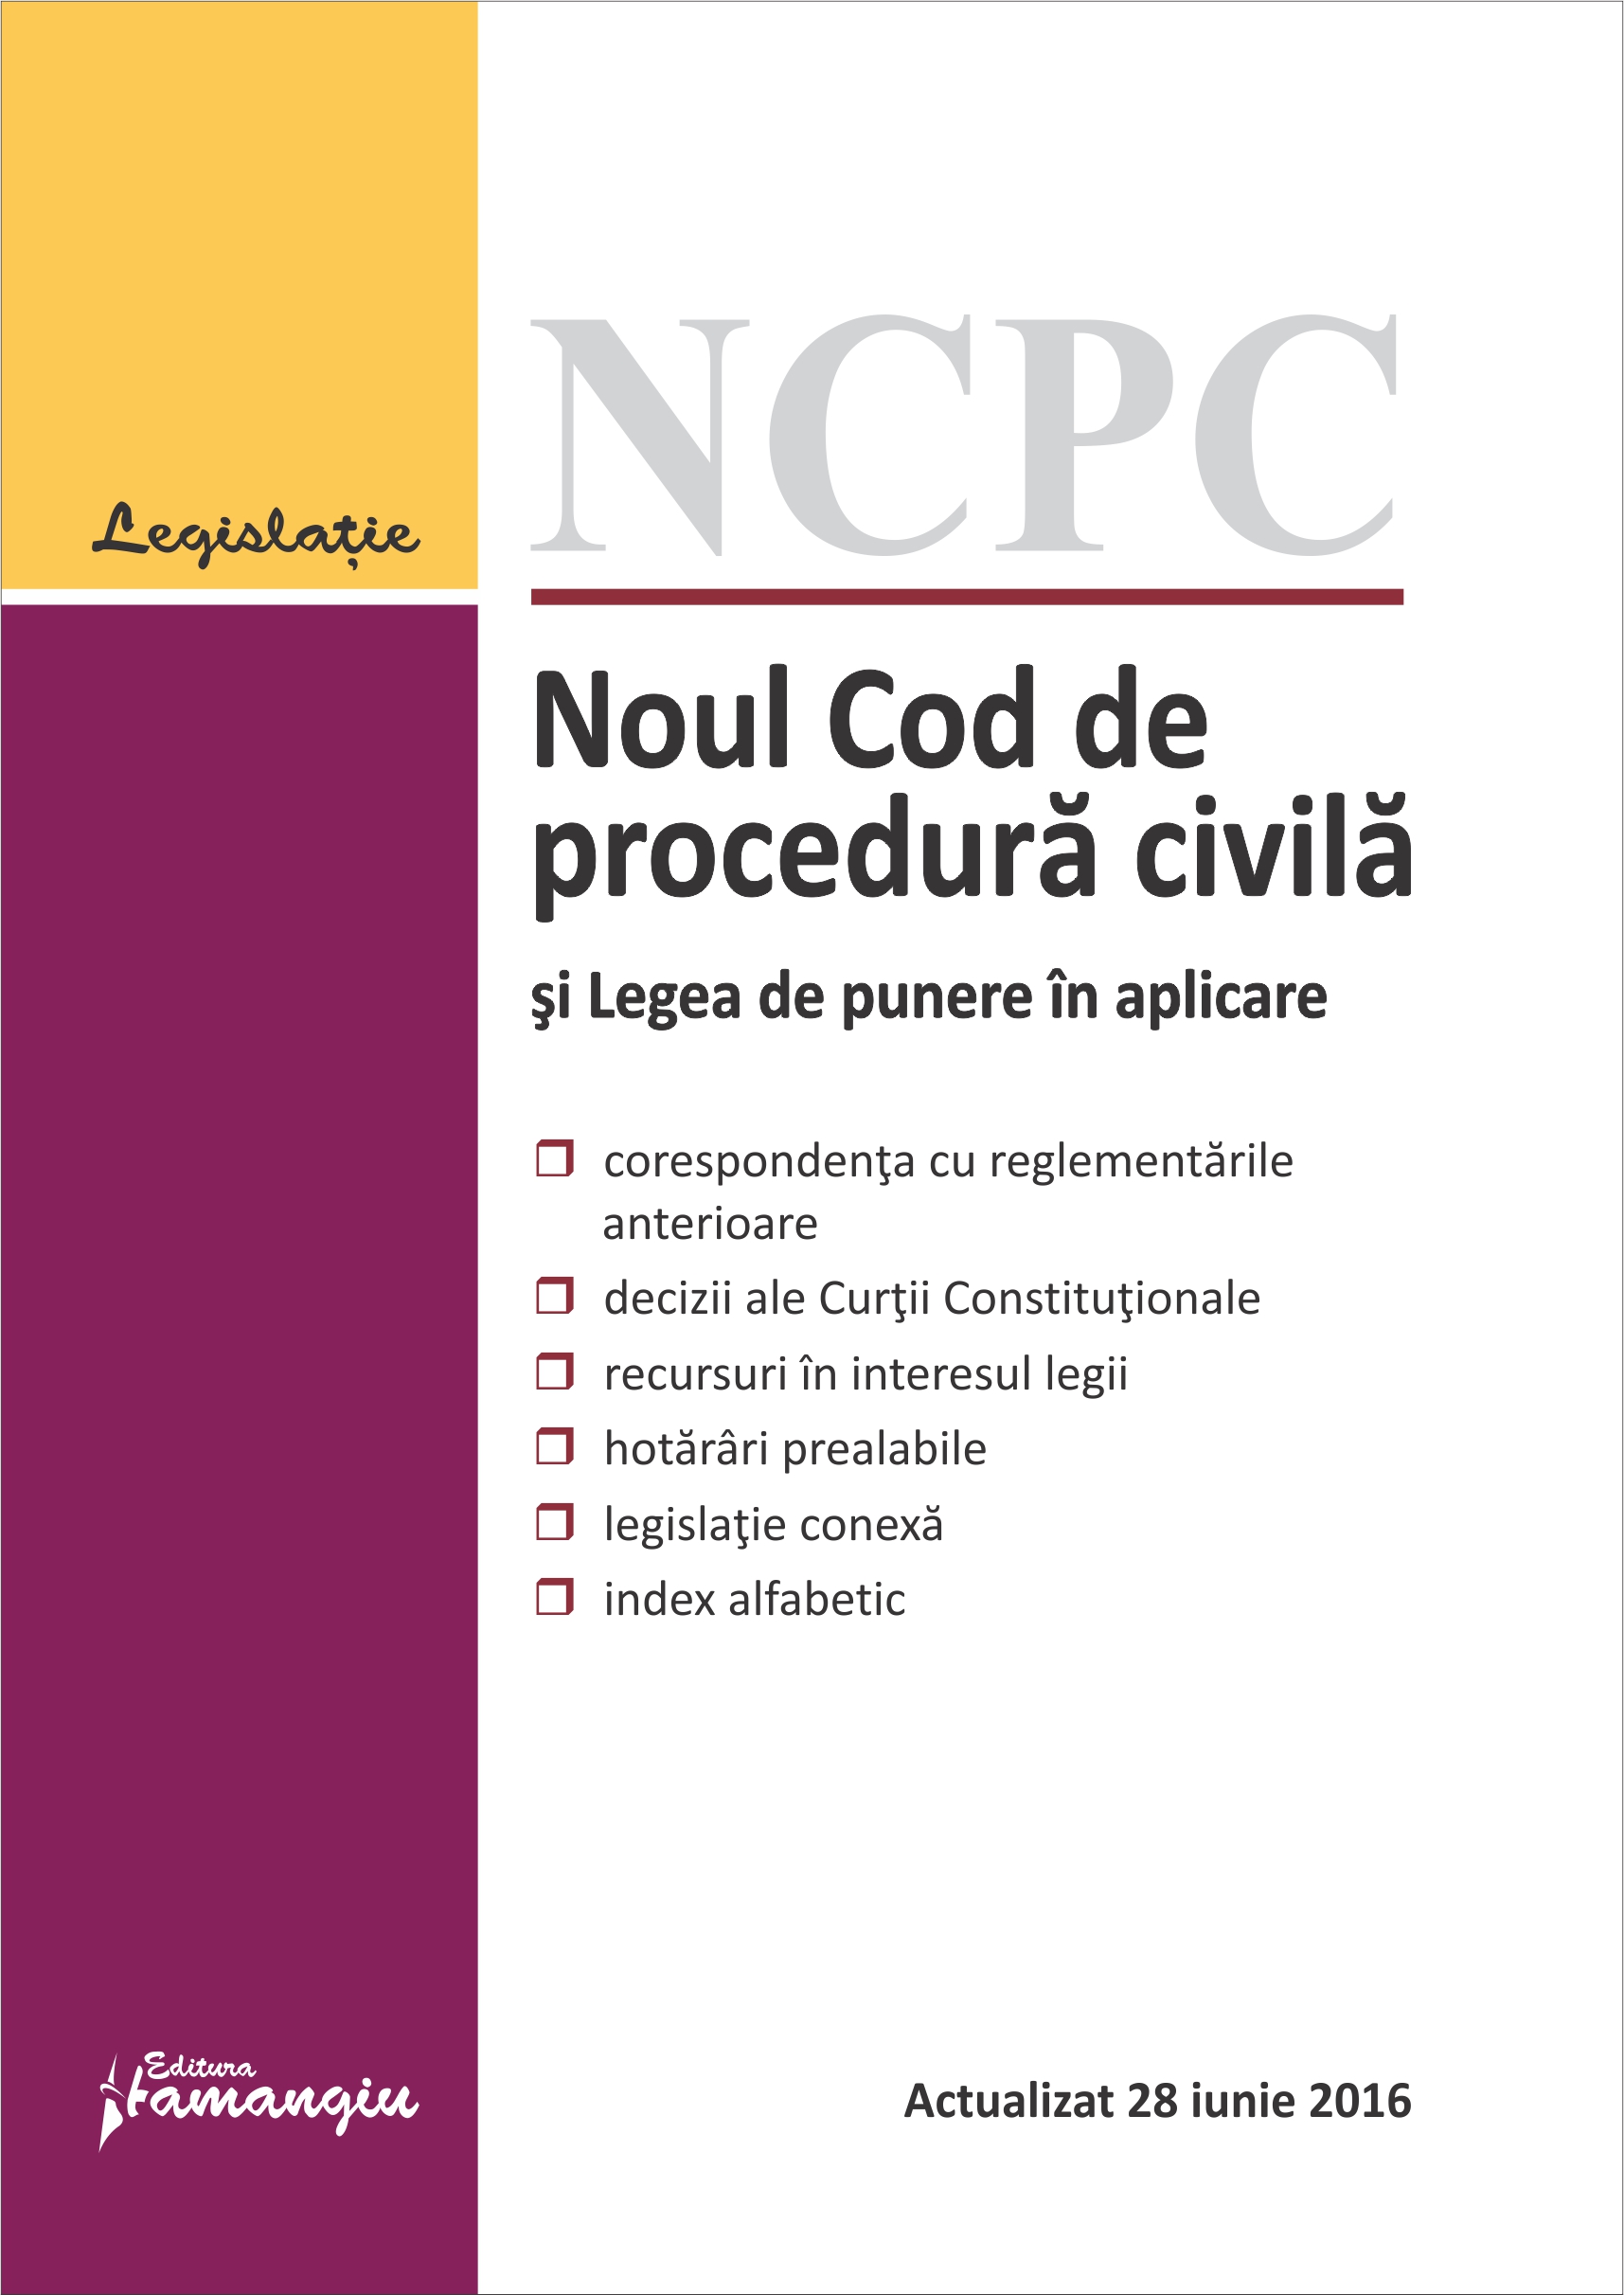 Noul Cod de procedura civila si Legea de punere in aplicare act. 28 iunie 2016